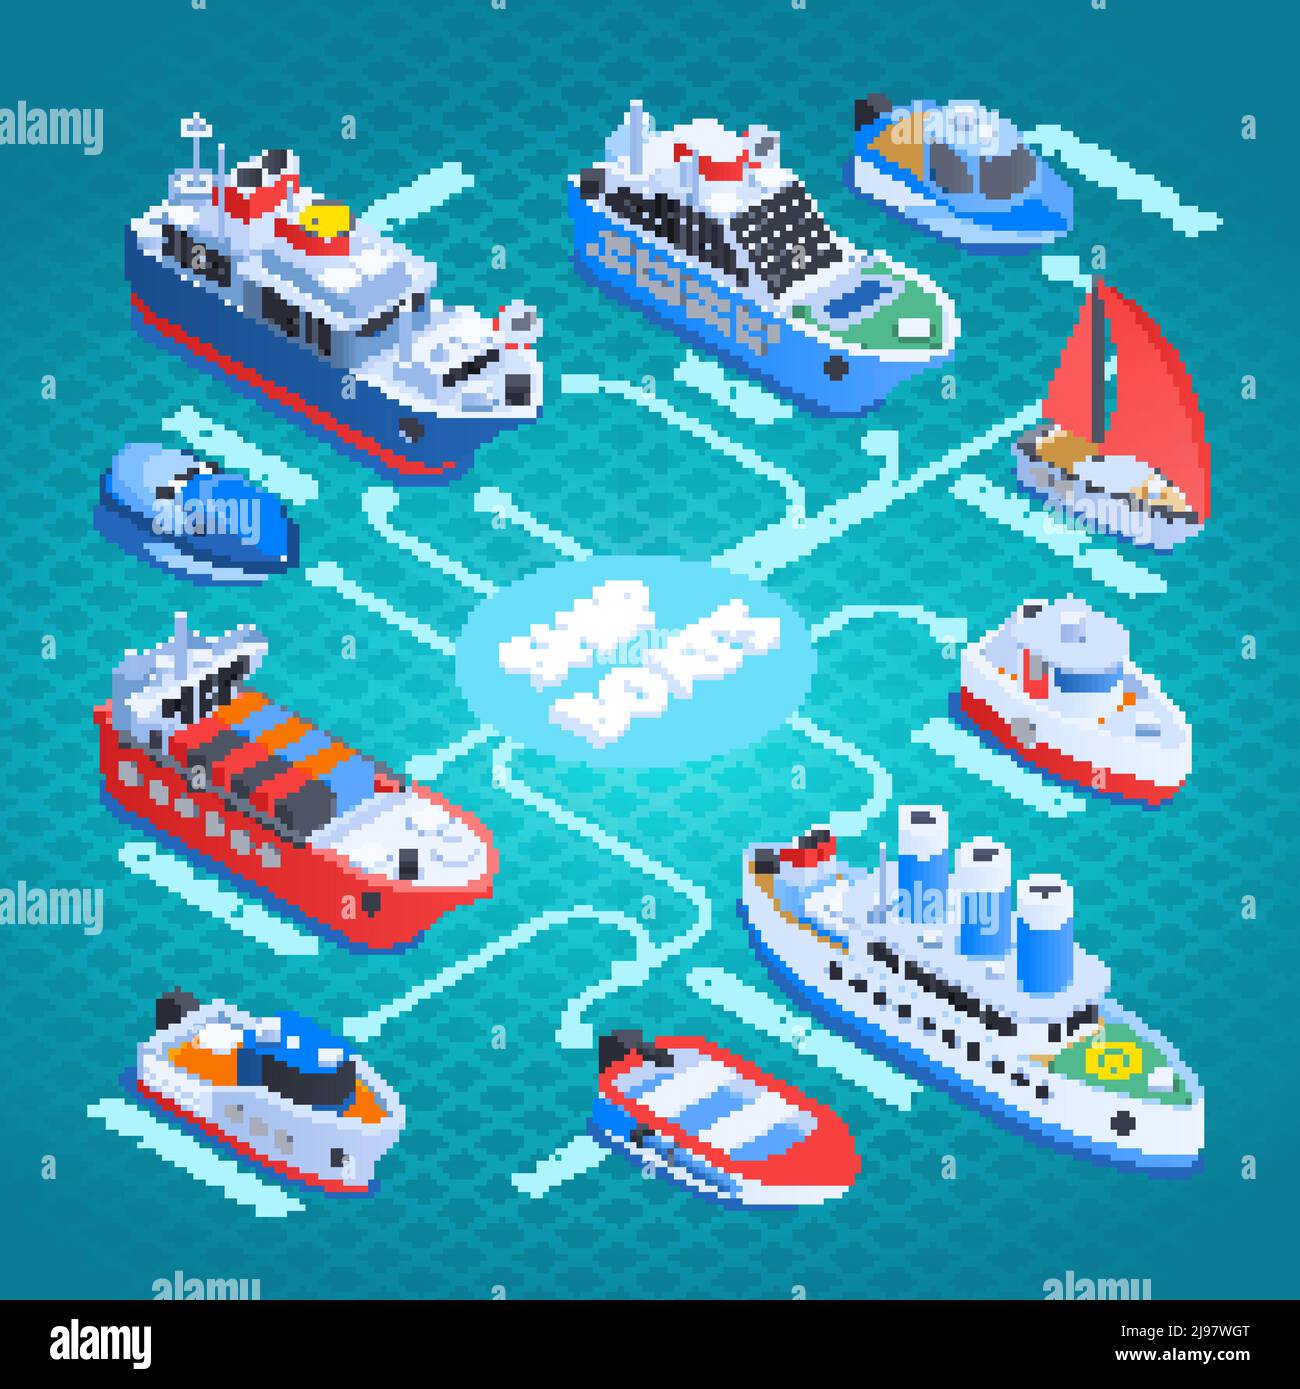 Diagrama de flujo isométrico de buques con buques de carga, transbordadores, cruceros, barcos de vela y barcos a motor sobre fondo turquesa ilustración vectorial Ilustración del Vector